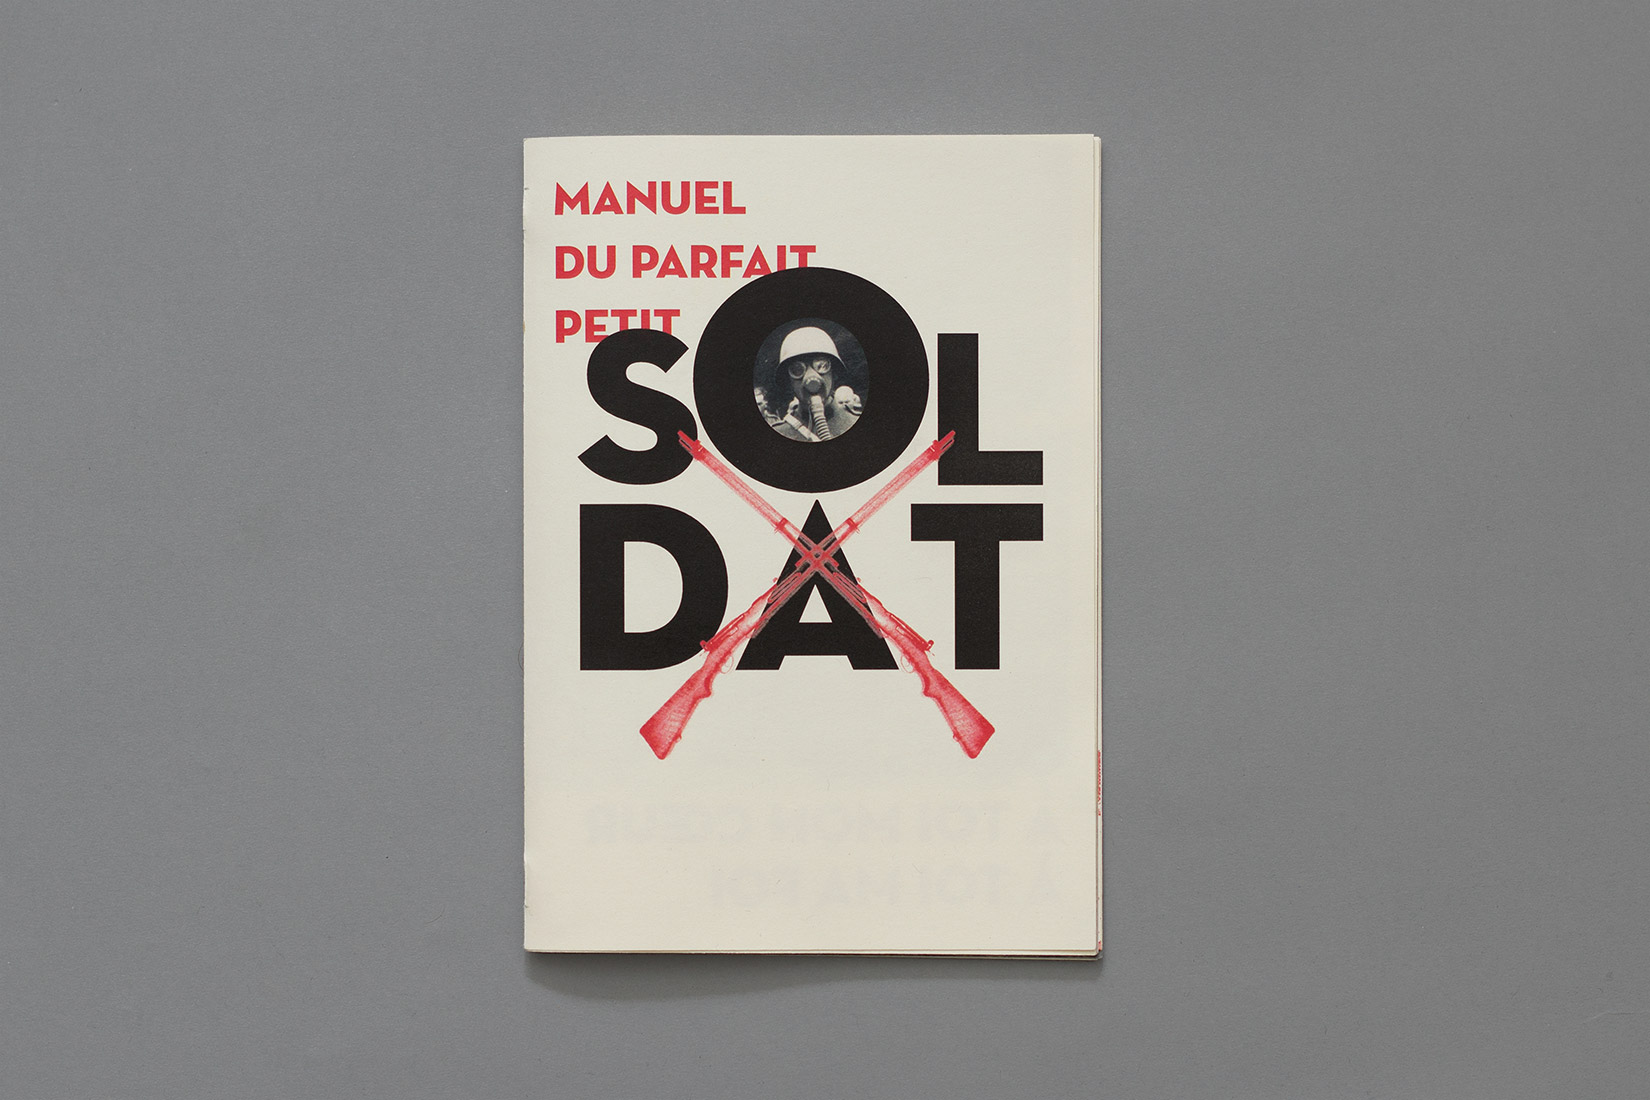 Manuel du parfait petit soldat, couverture, armée suisse, masque à gaz, fusils, Neutra, Neutraface, typographie